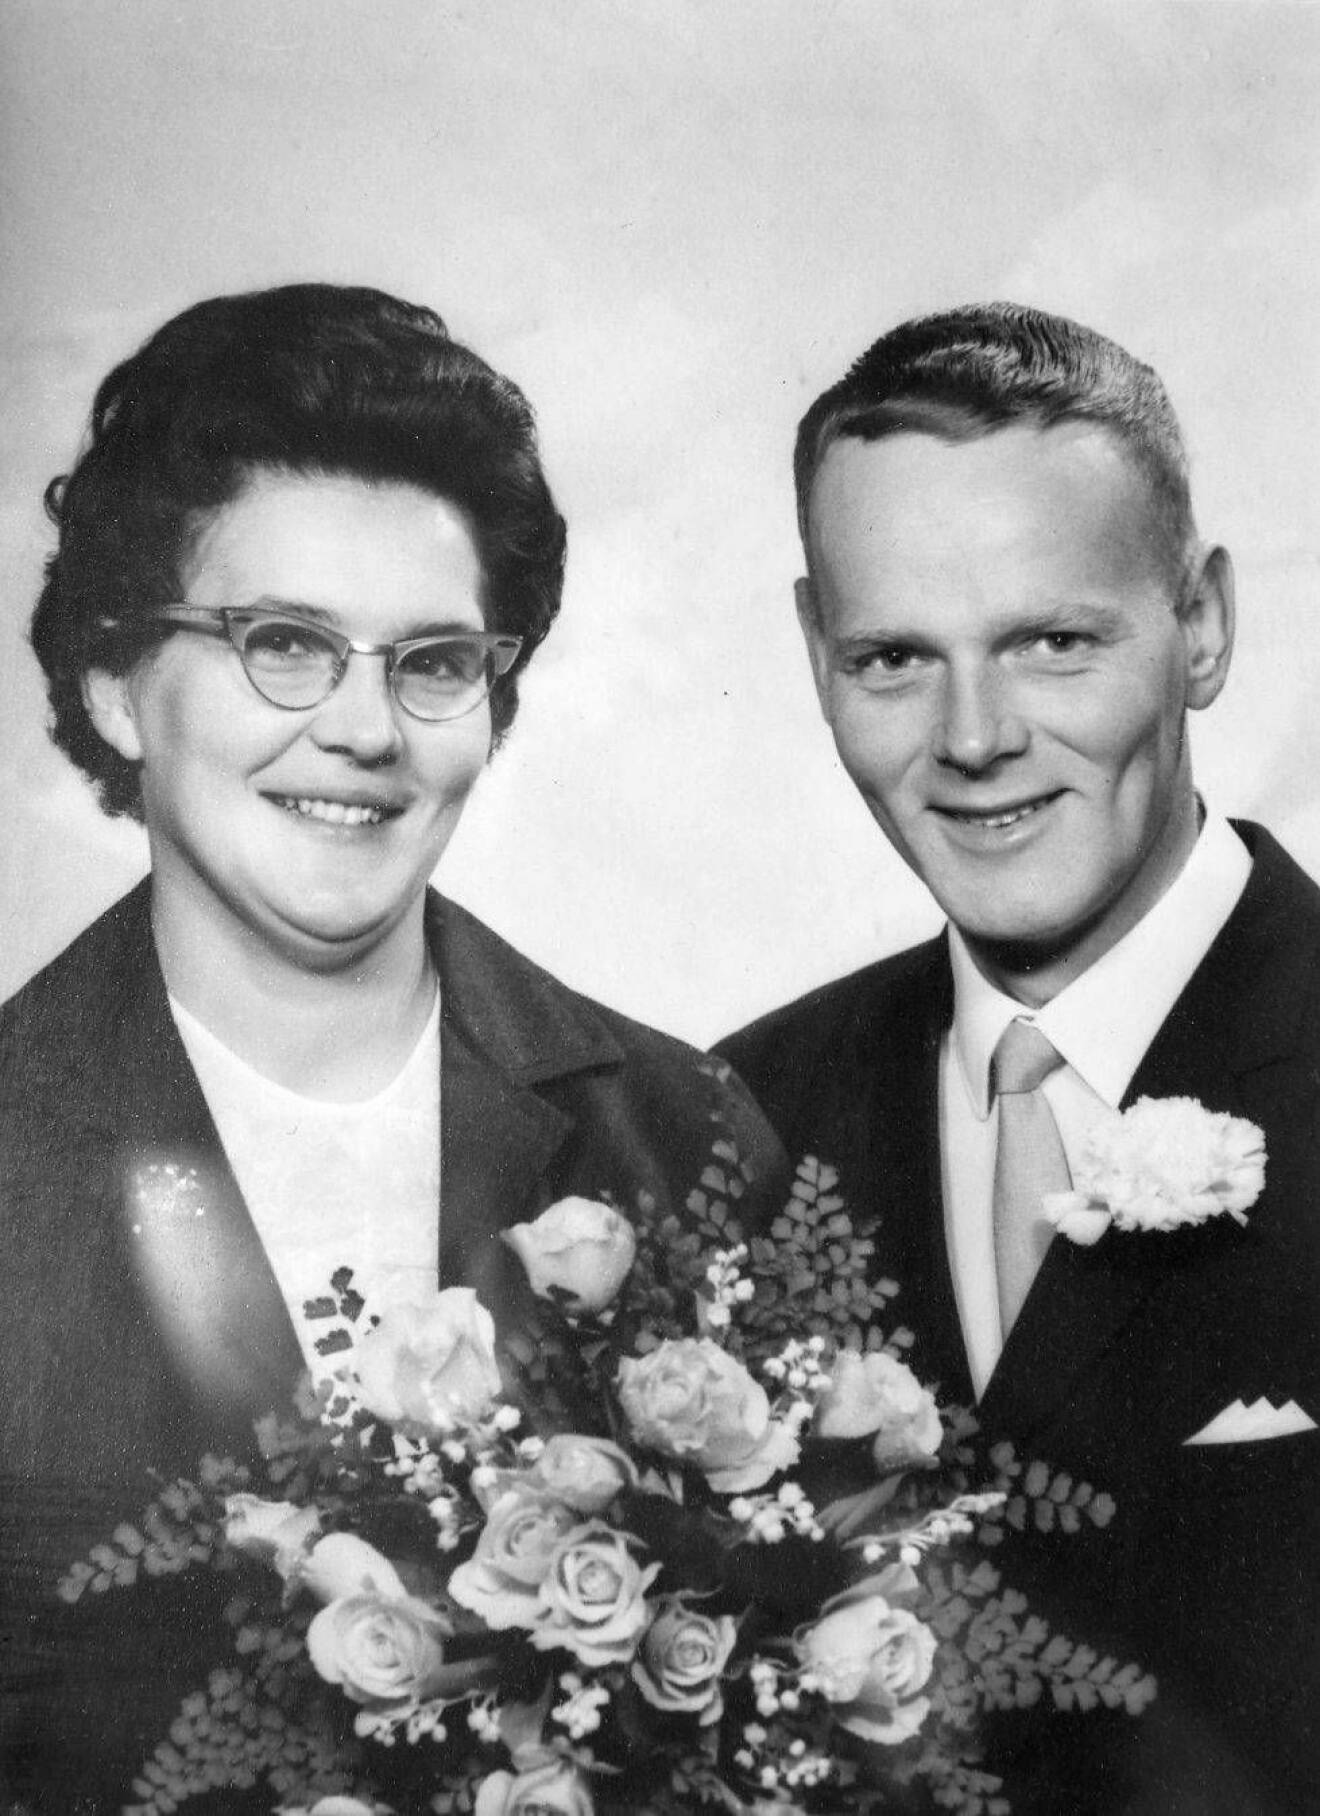 Siv och Arne träffades år 1962 och tre år senare gifte de sig.